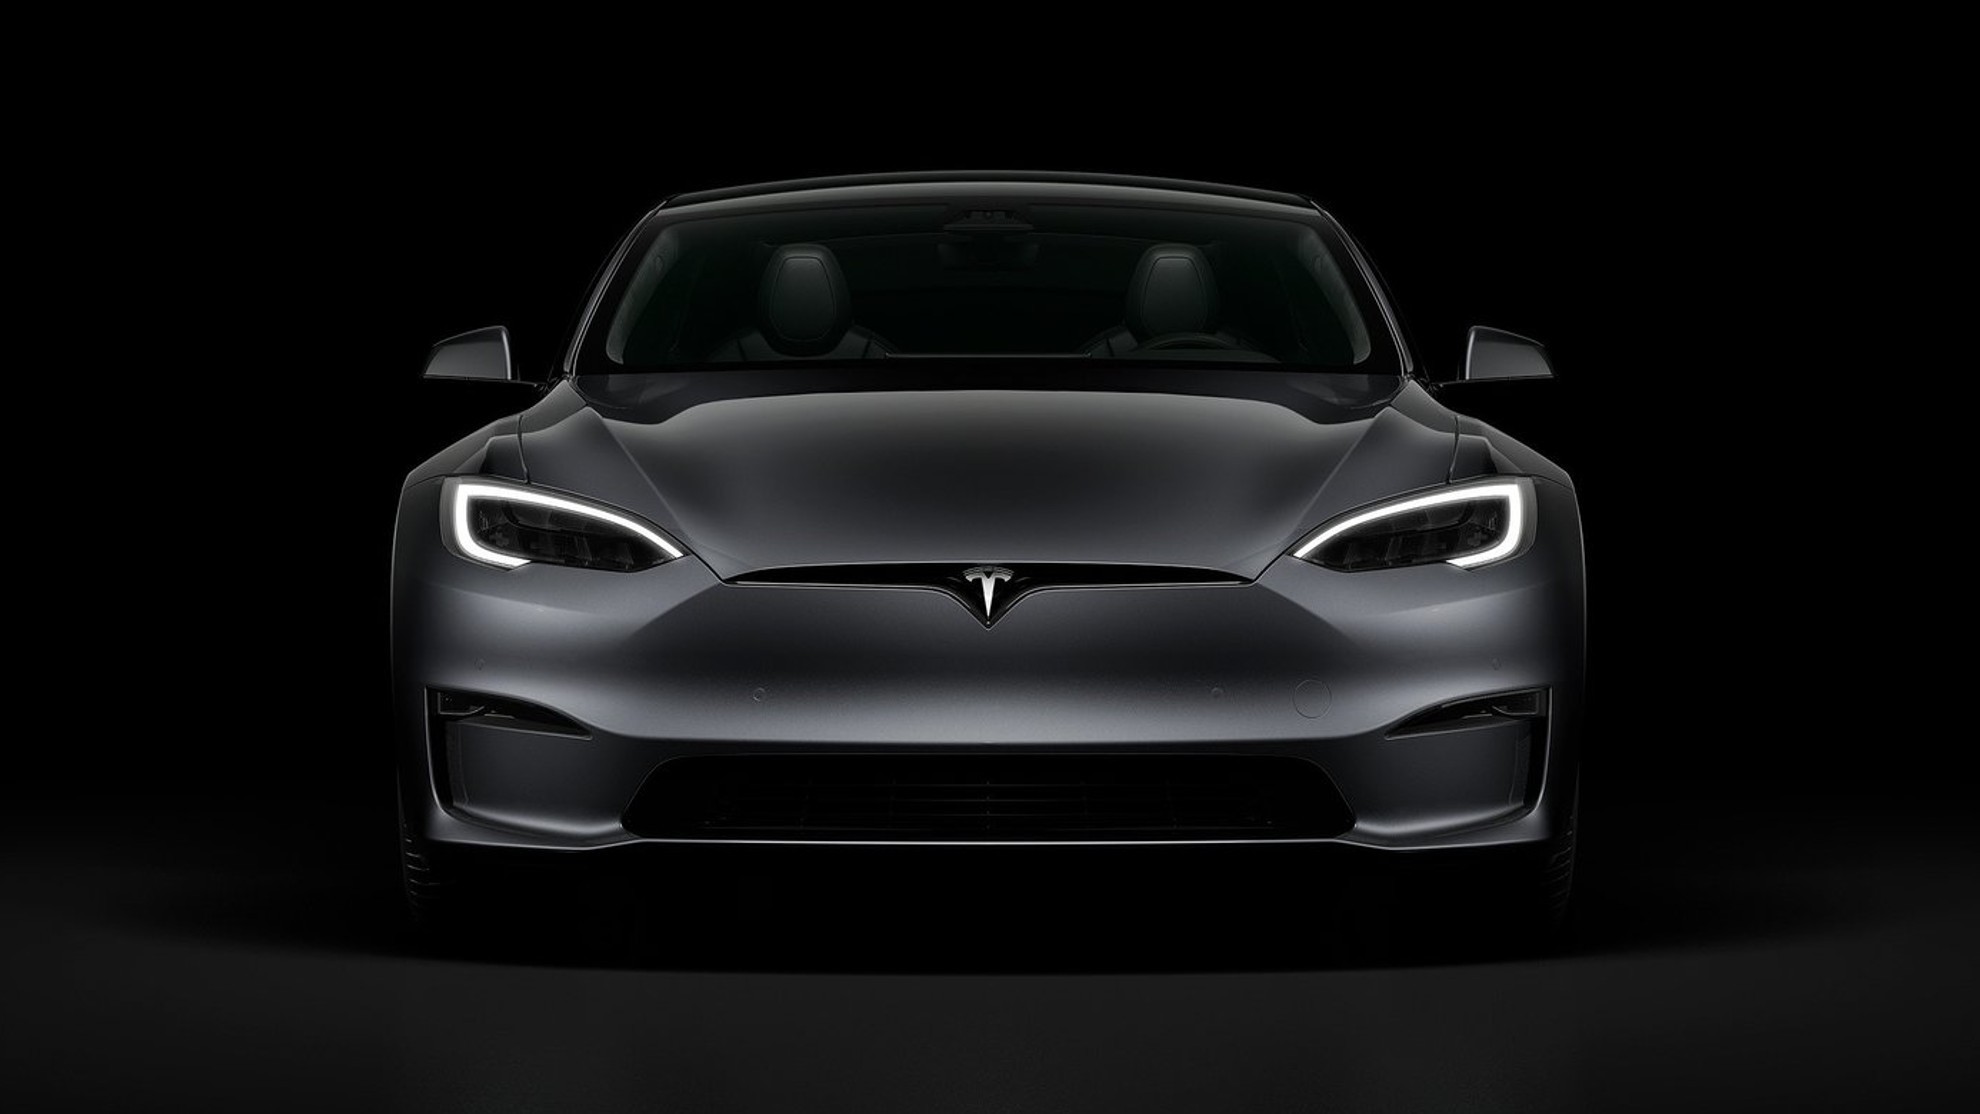 Tesla Model S Plaid - frenos cermicos - kit frenos carbonocermicos - 20.000 dlares - precio